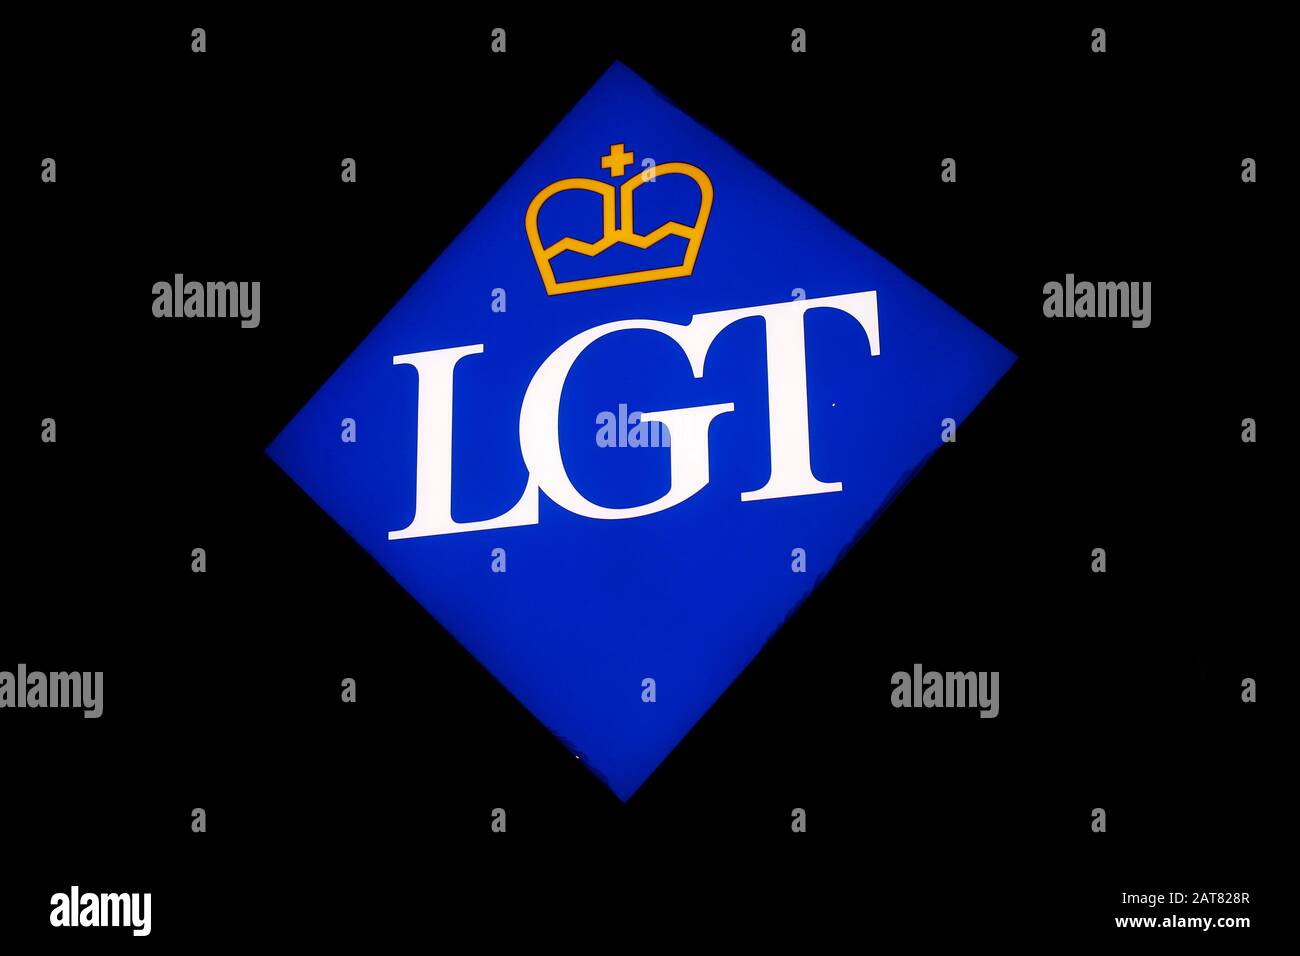 das Logo der Marke/ the logo of the brand 'LGT', Wien, Oesterreich/ Vienna, Austria (nur fuer redaktionelle Verwendung. Keine Werbung. Referenzdatenba Stock Photo